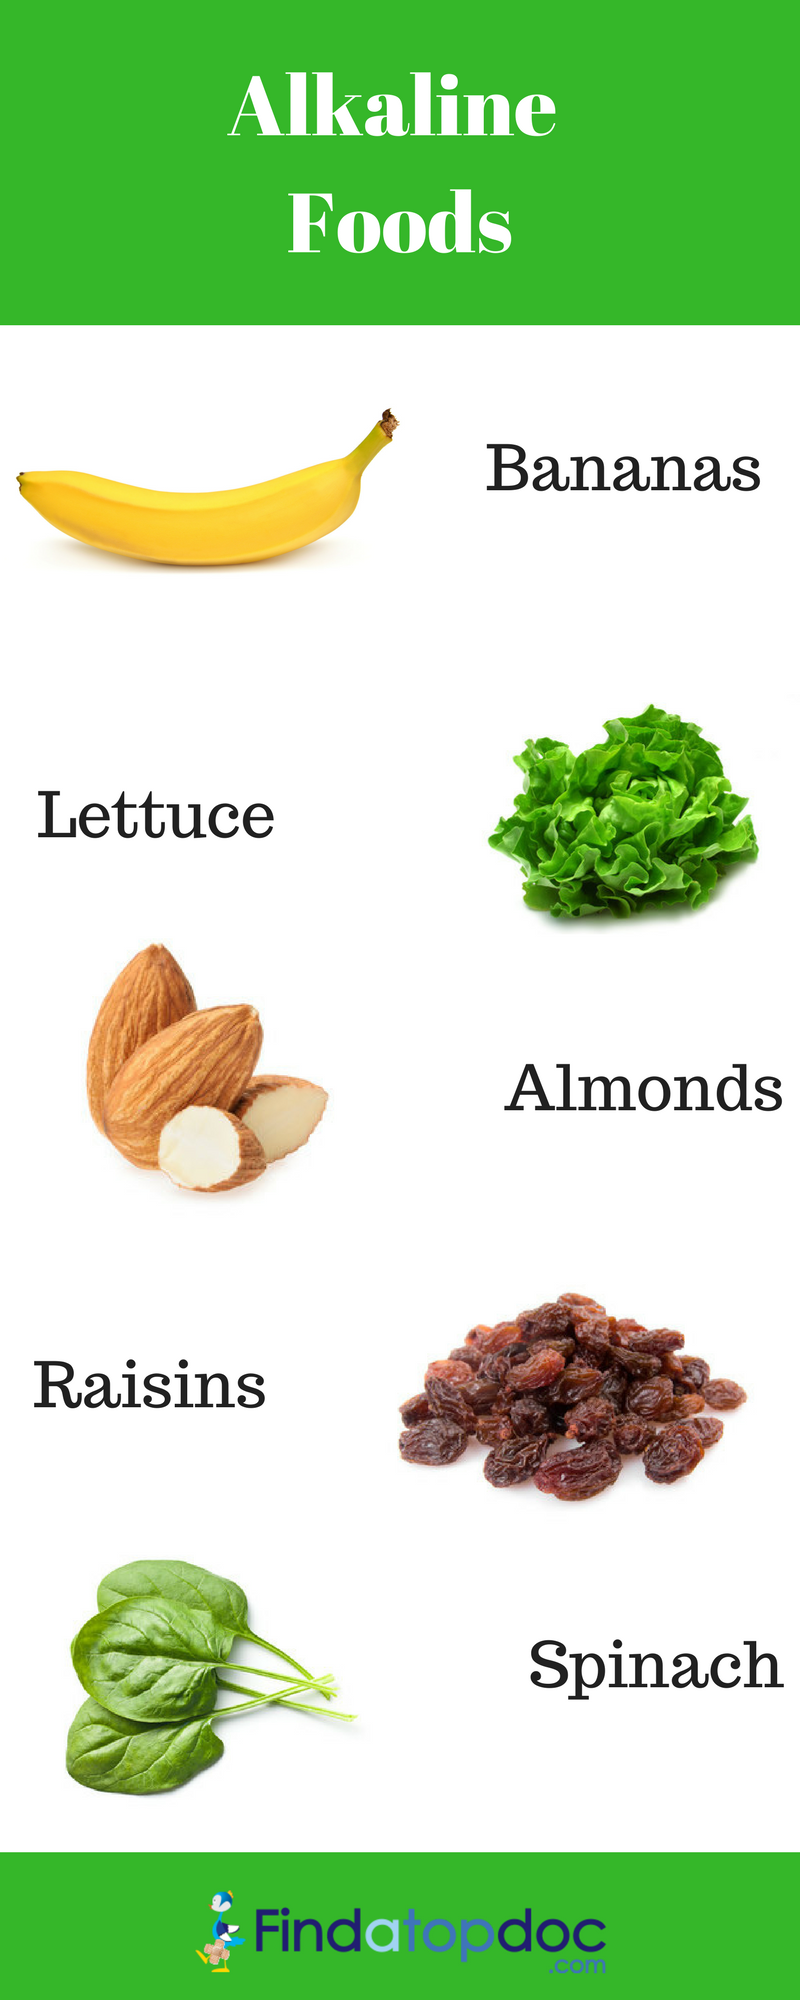 alkaline-foods.png